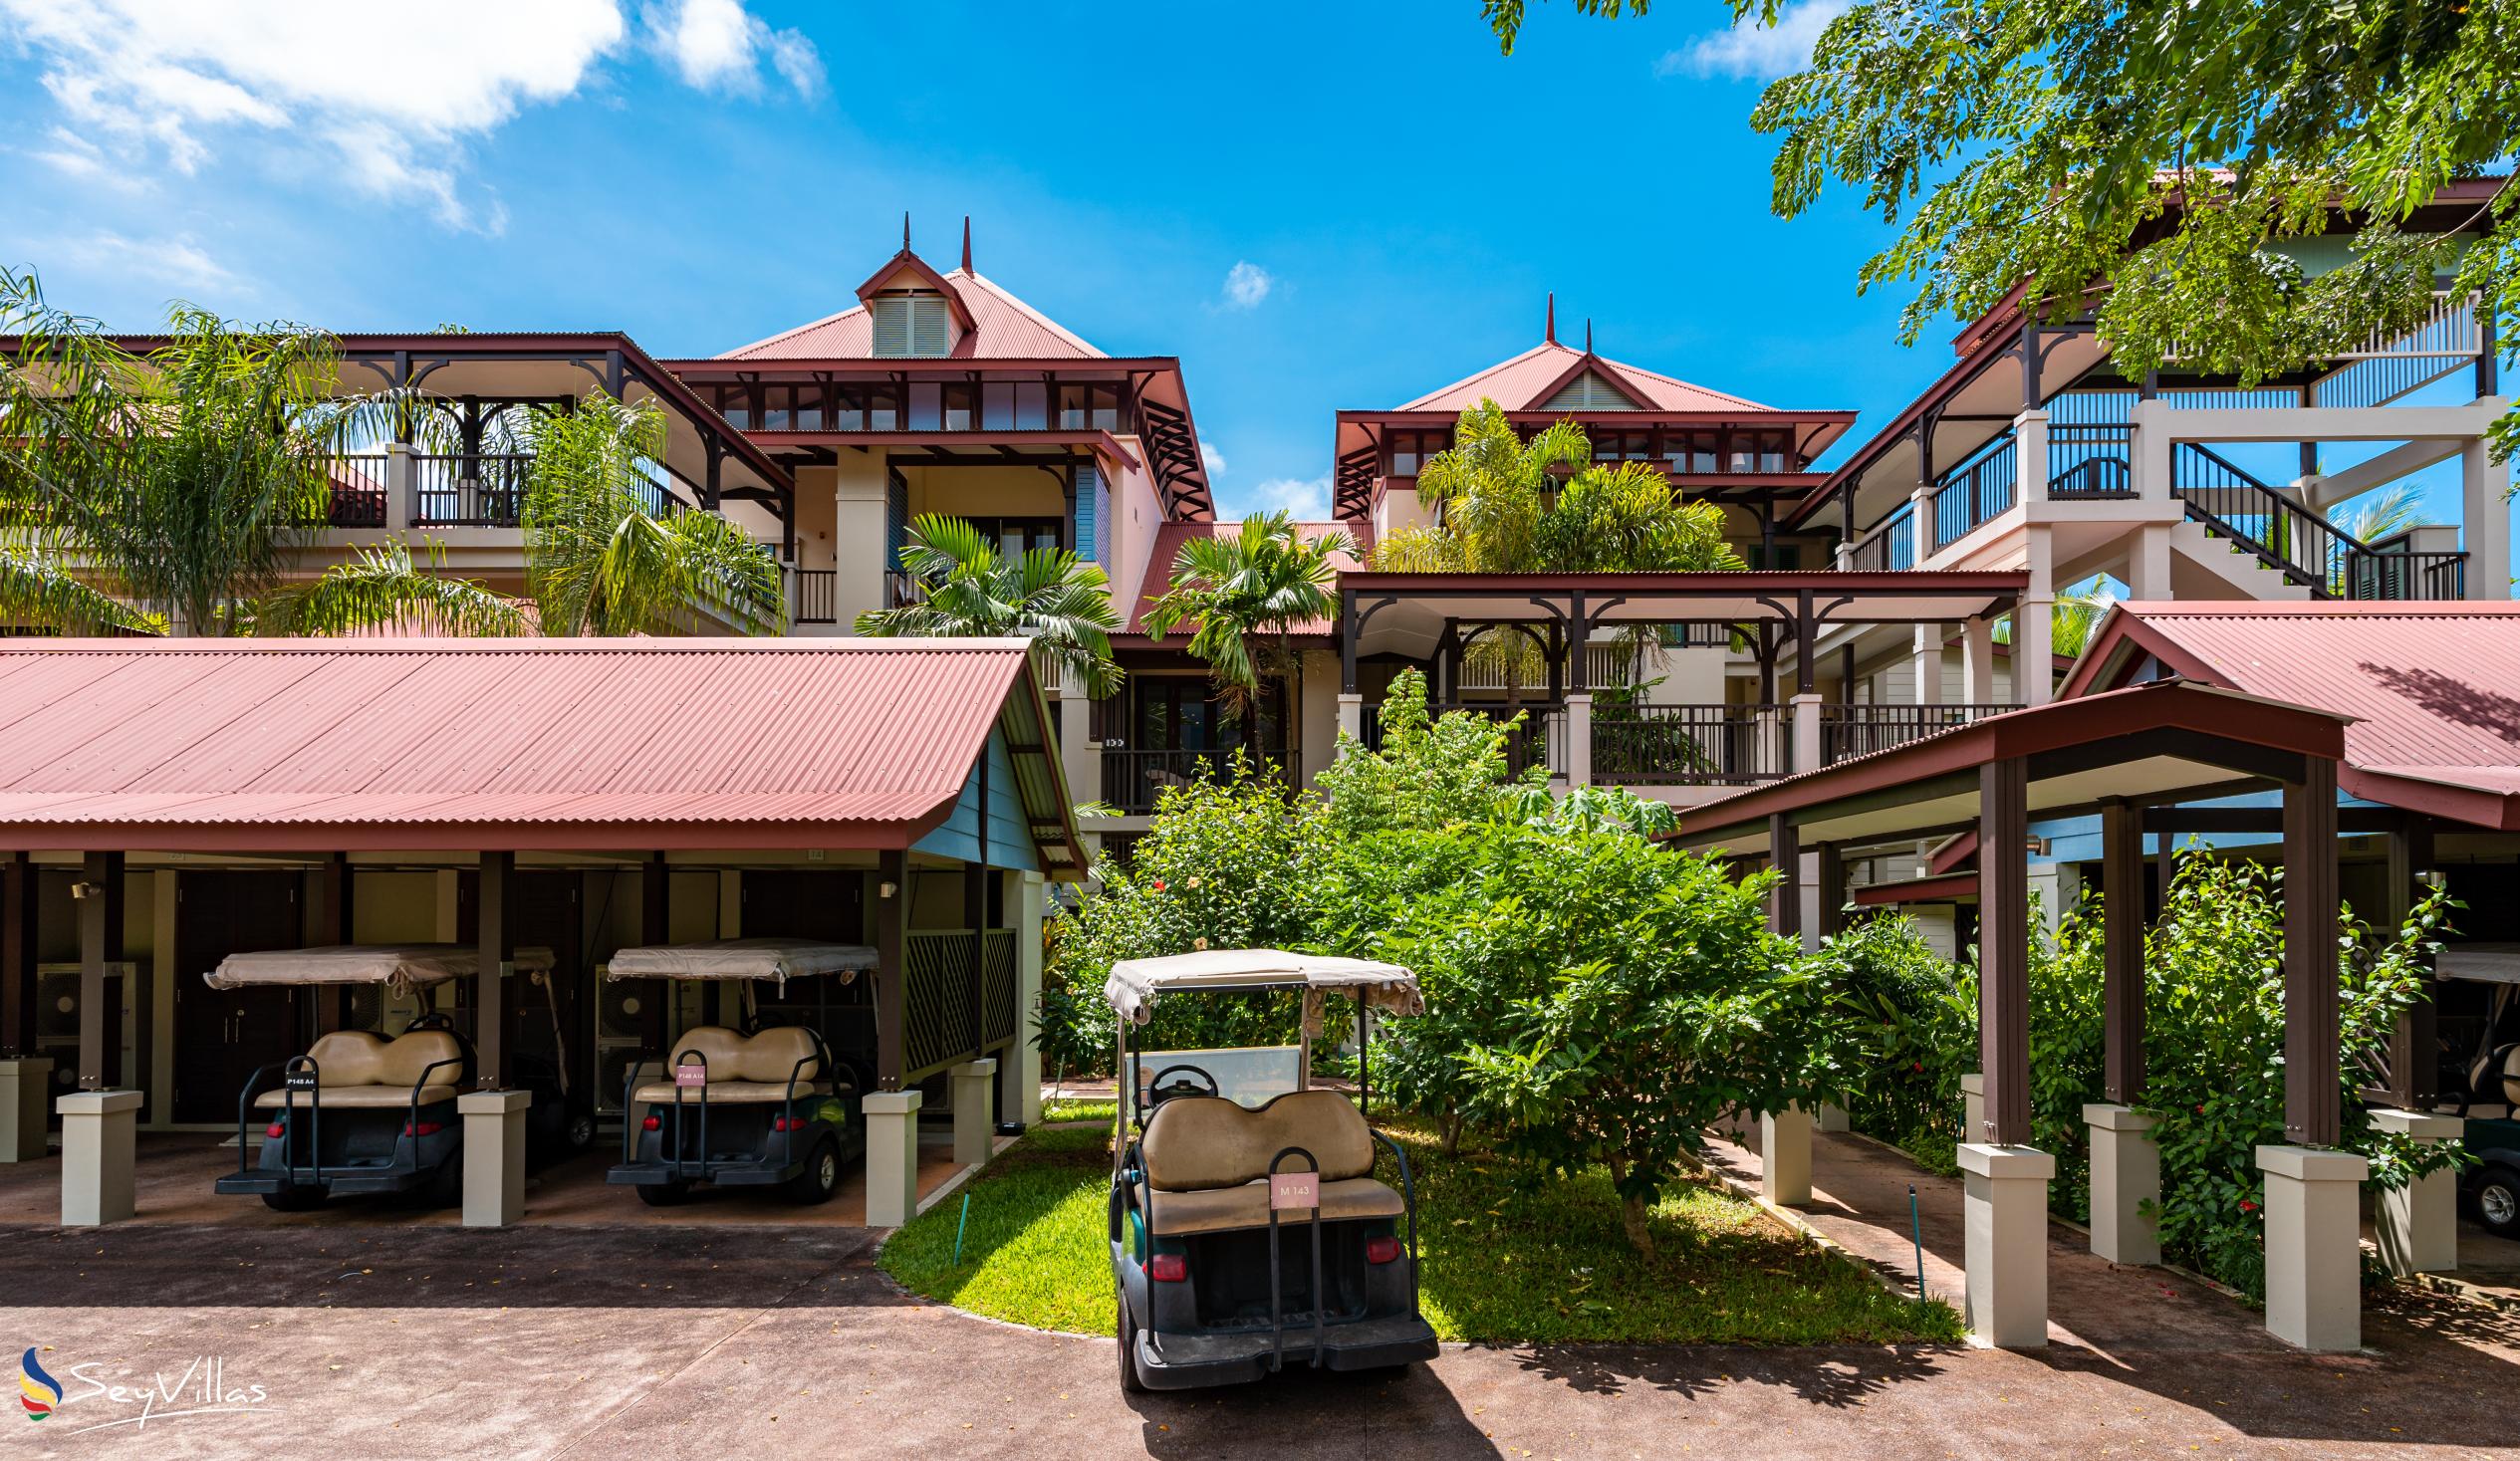 Foto 15: Seychelles Dream House - Aussenbereich - Mahé (Seychellen)